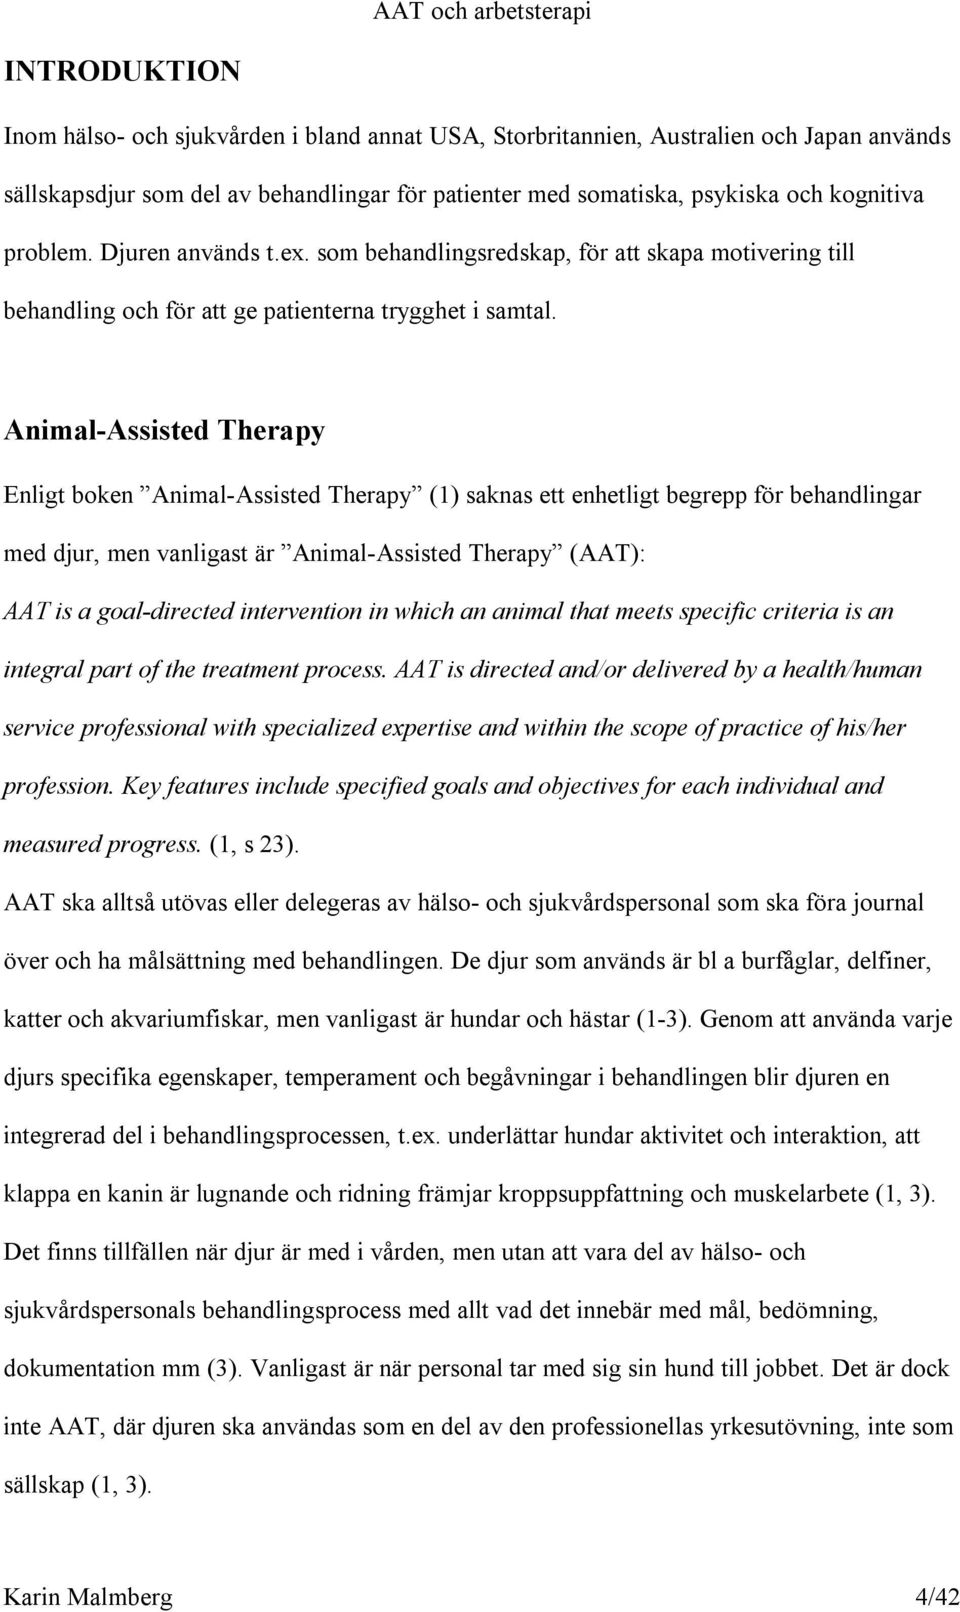 Animal-Assisted Therapy Enligt boken Animal-Assisted Therapy (1) saknas ett enhetligt begrepp för behandlingar med djur, men vanligast är Animal-Assisted Therapy (AAT): AAT is a goal-directed